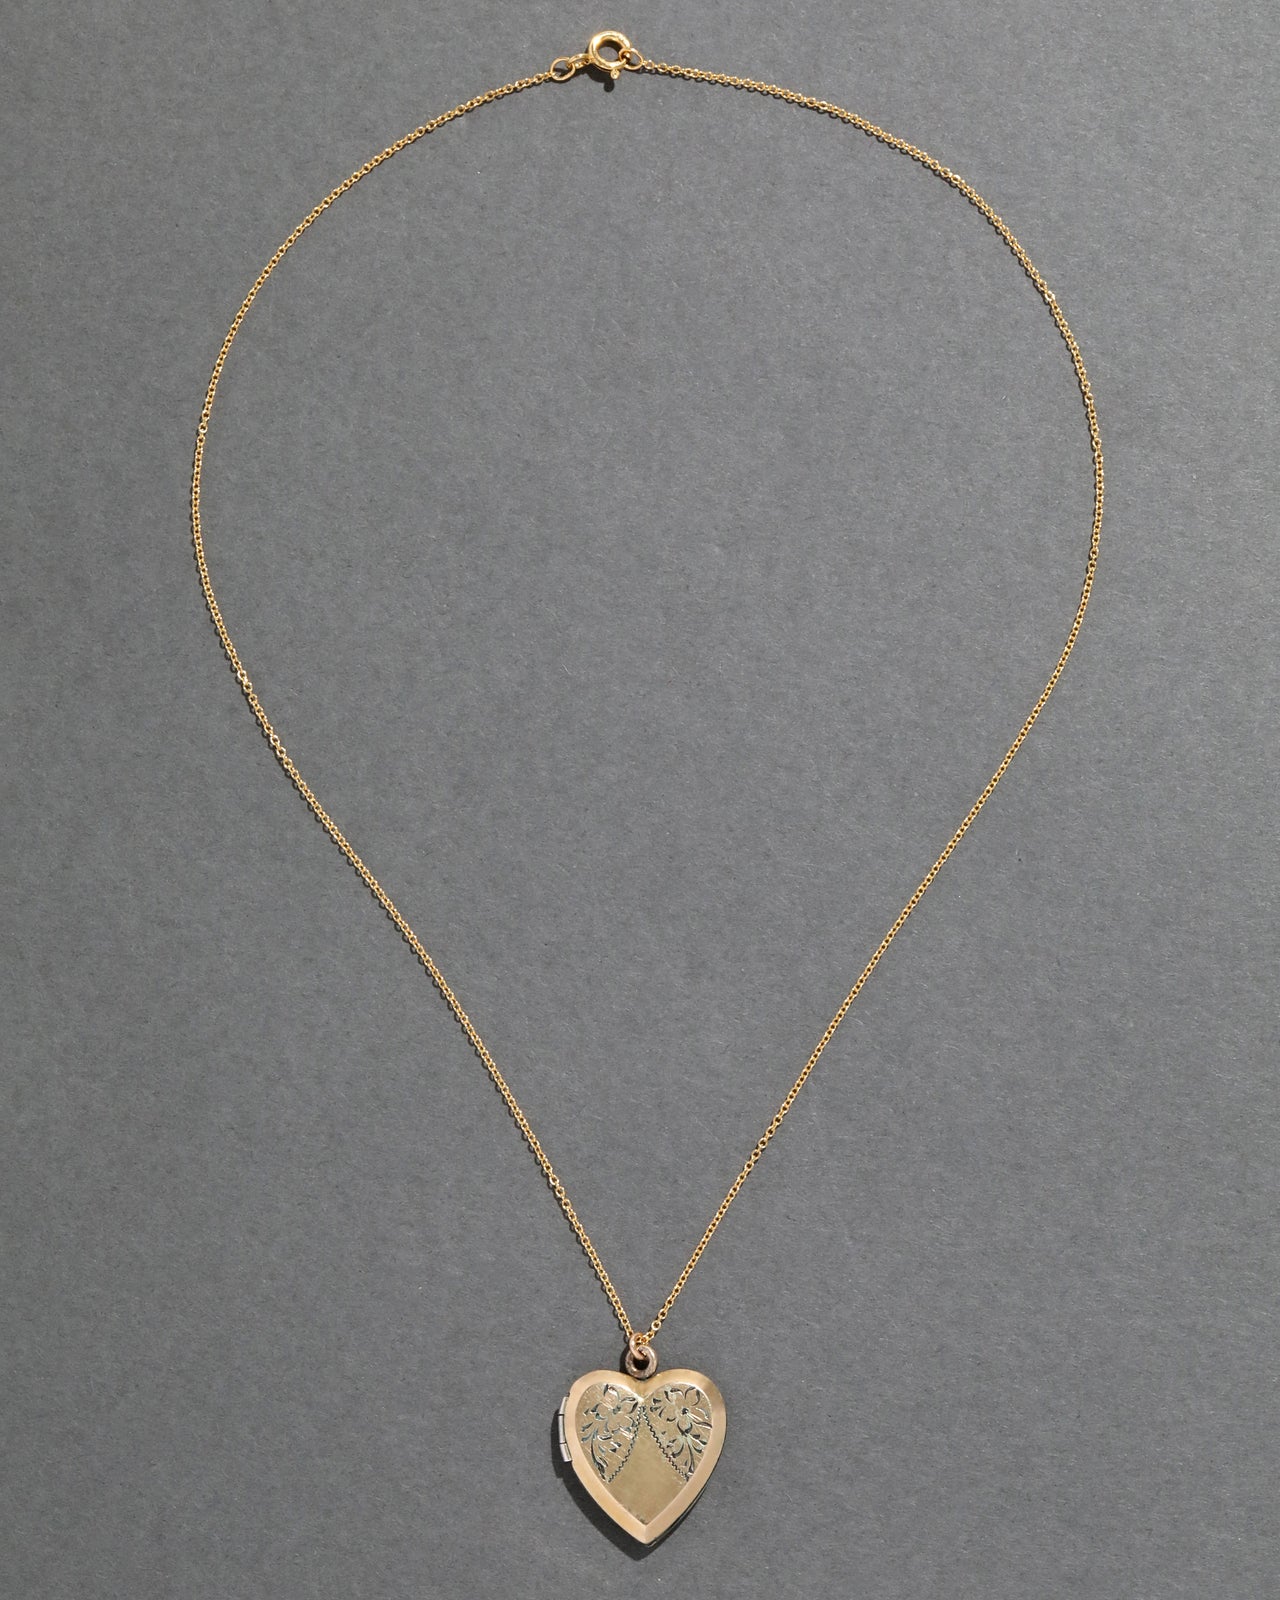 Vintage 1950s 12k Gold FIlled Engraved Heart Locket Necklace - Photo 2